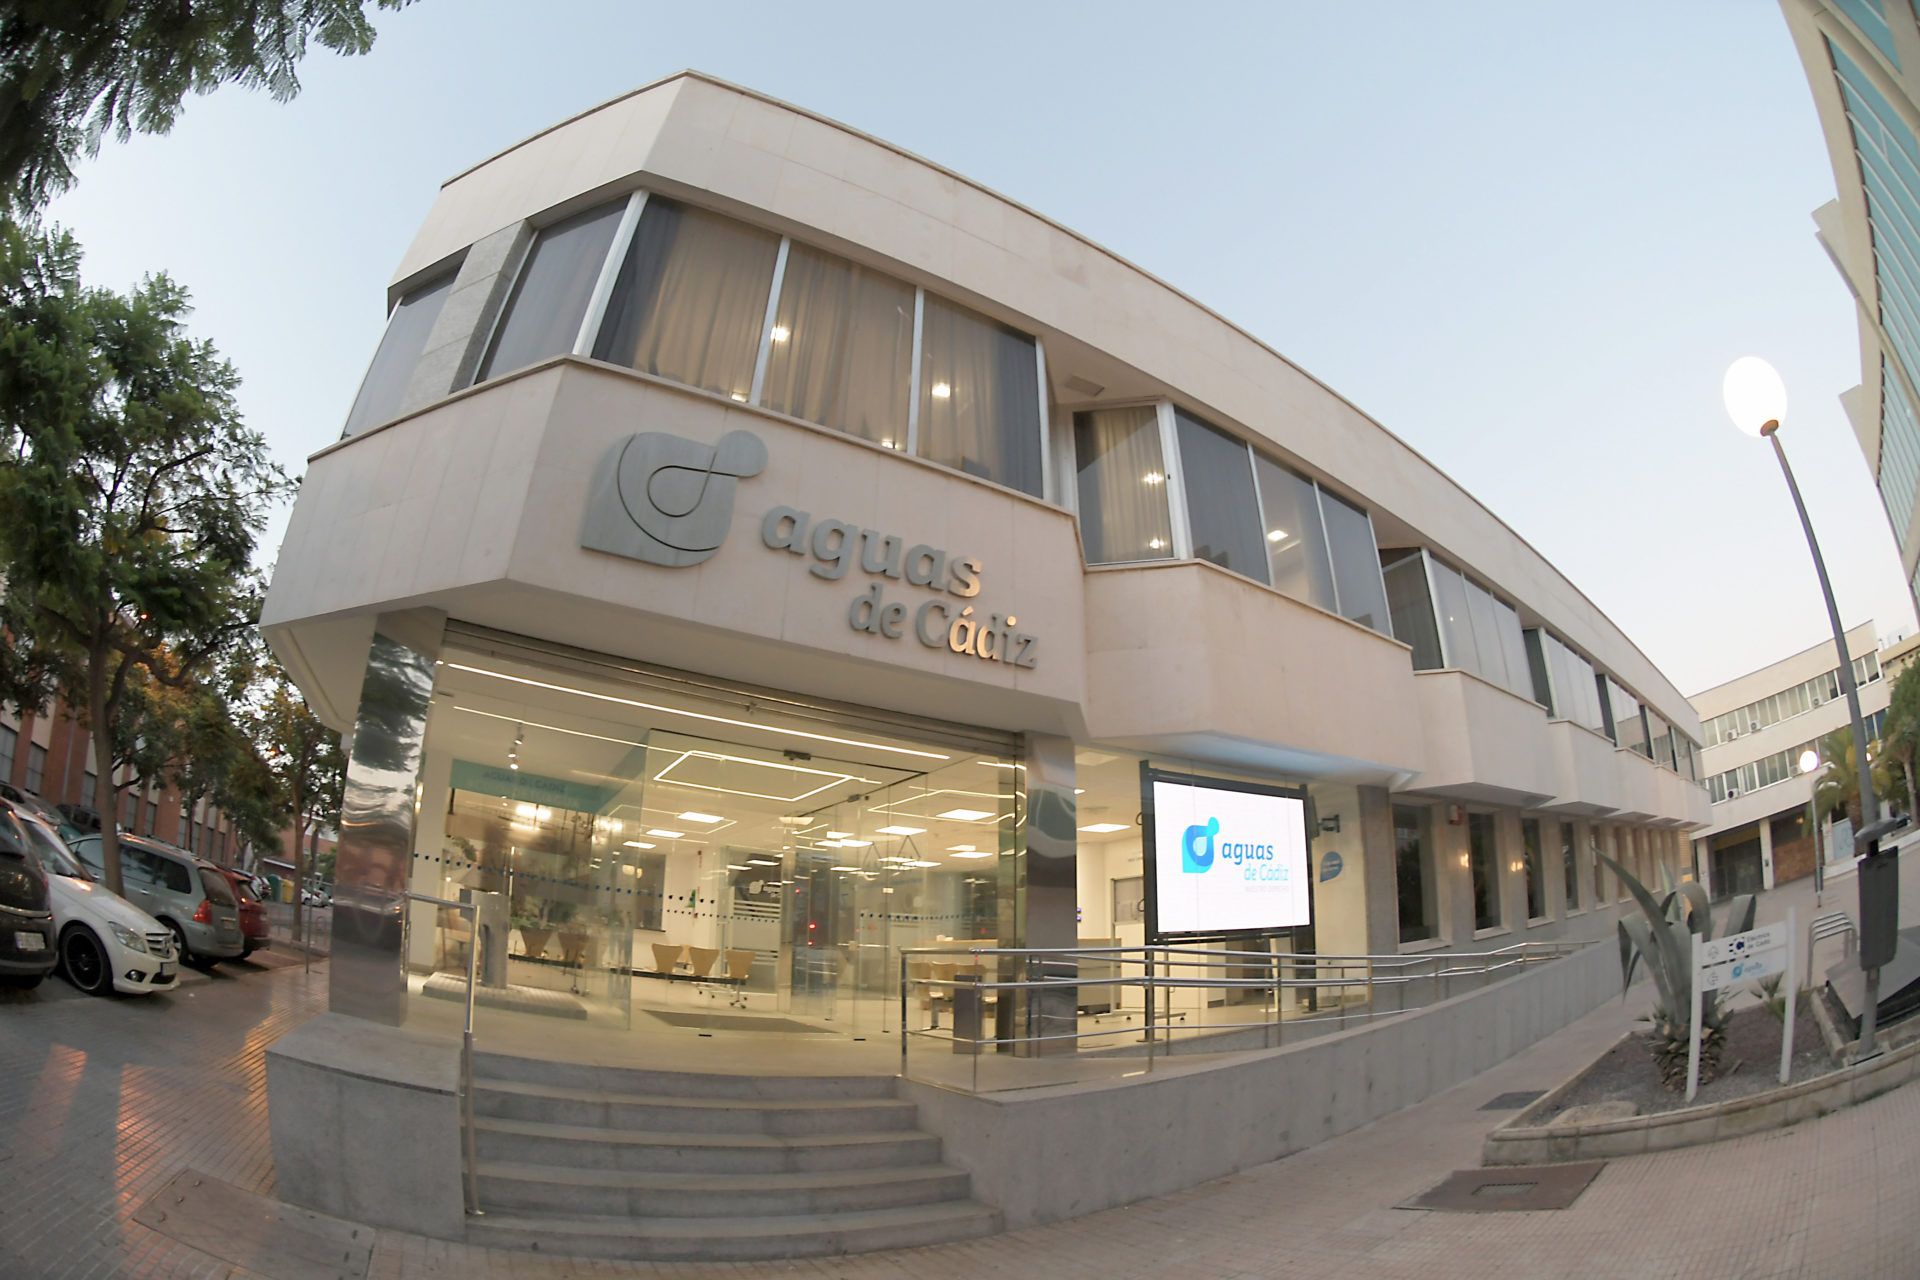  En la imagen, oficinas de Aguas de Cádiz.